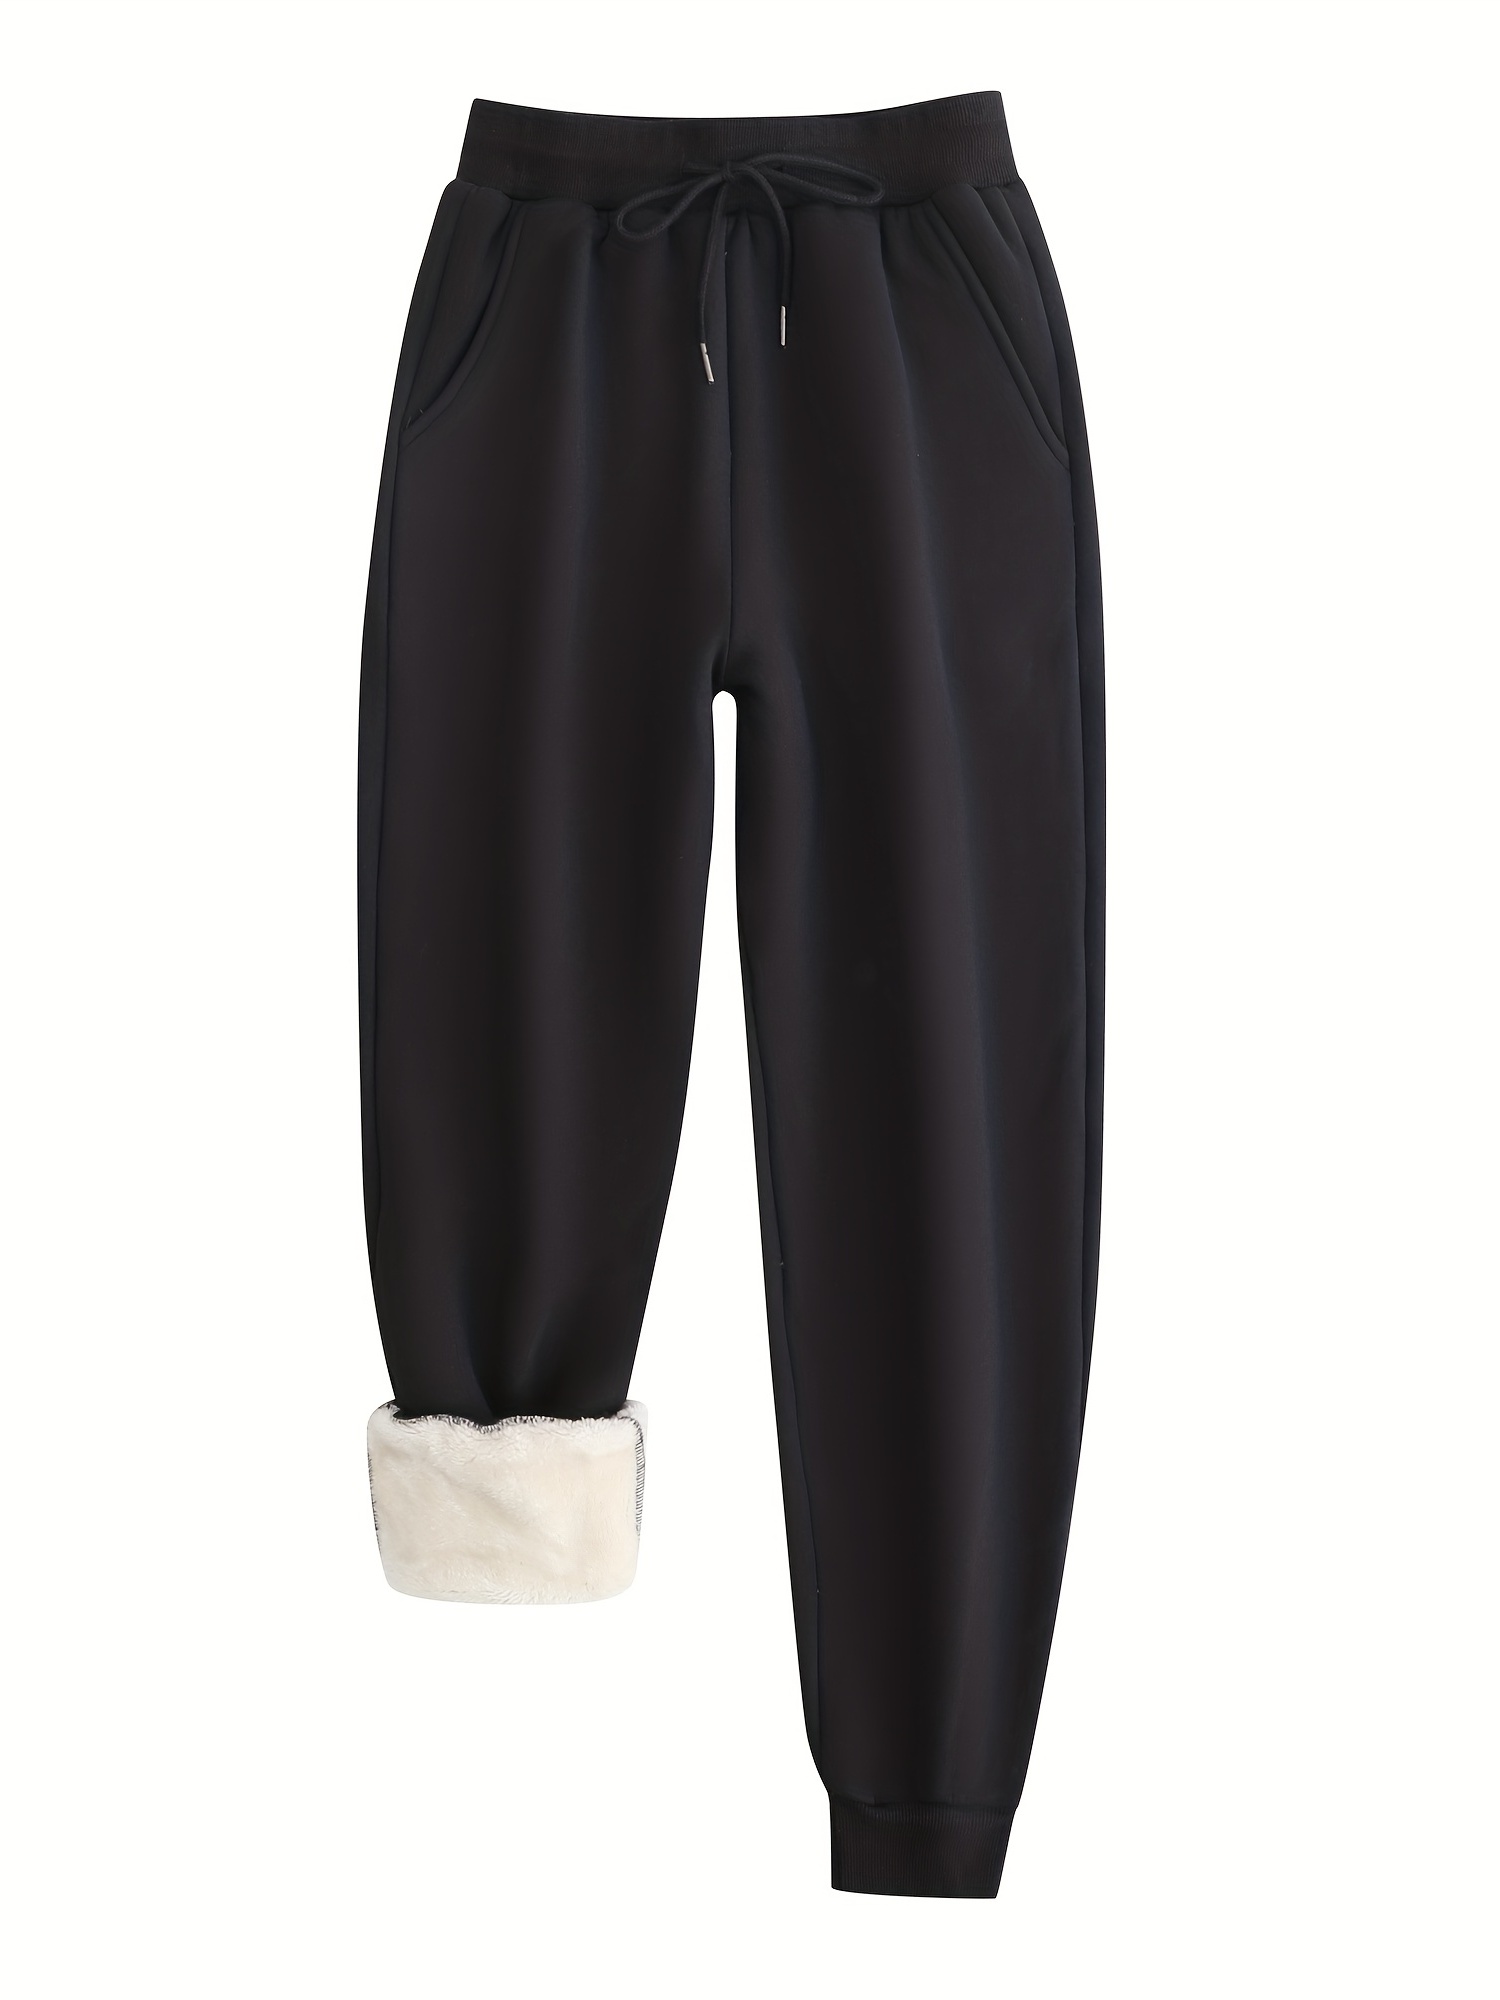 Buy Women's Jogging Pants Casual Jogging Pants Thermal Furry